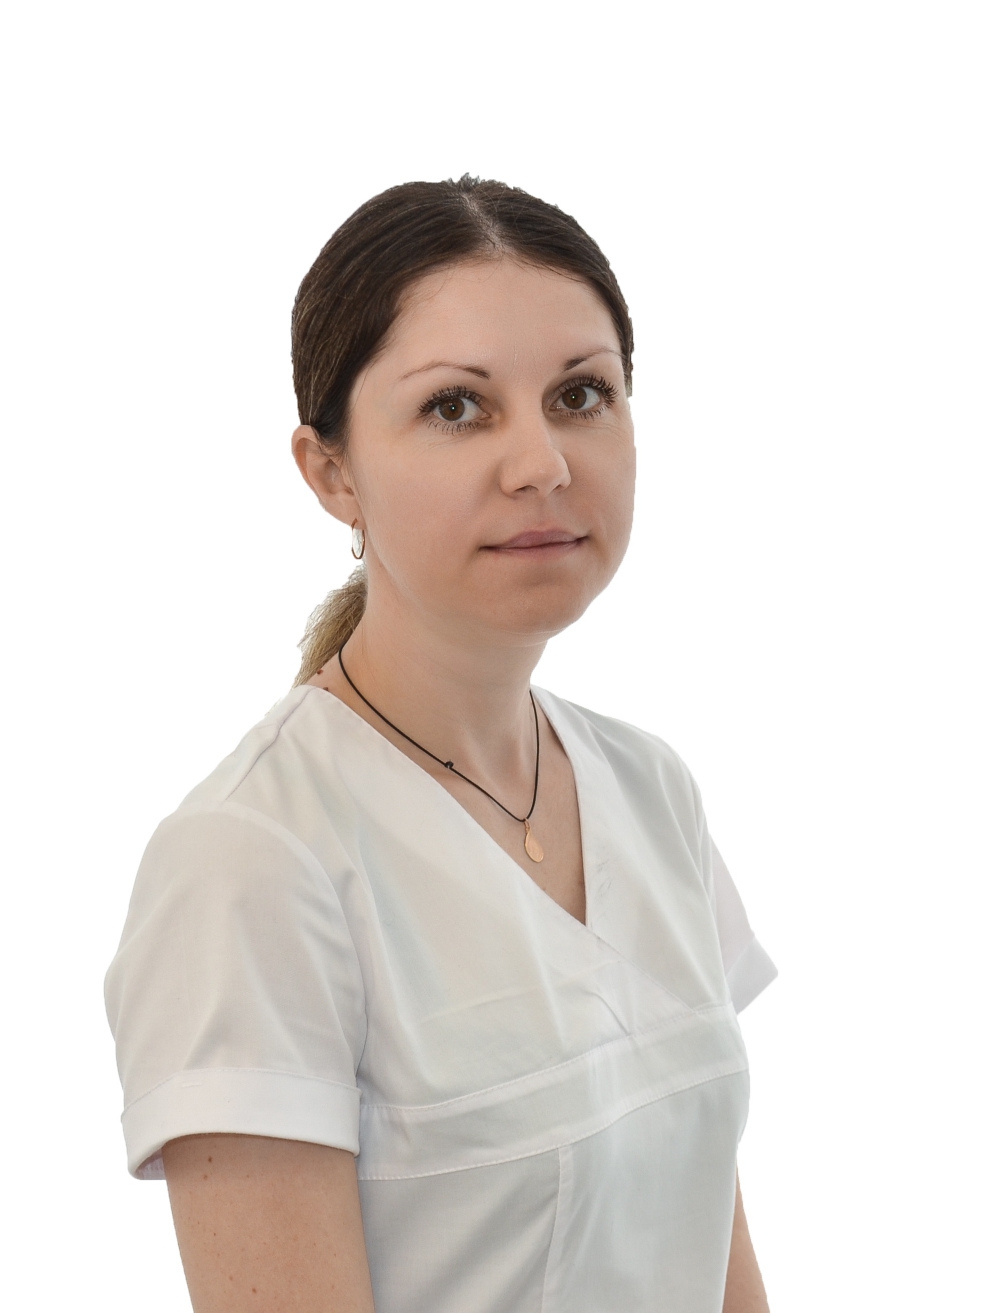 Бобровская Ольга Анатольевна - стоматологическая клиника L70